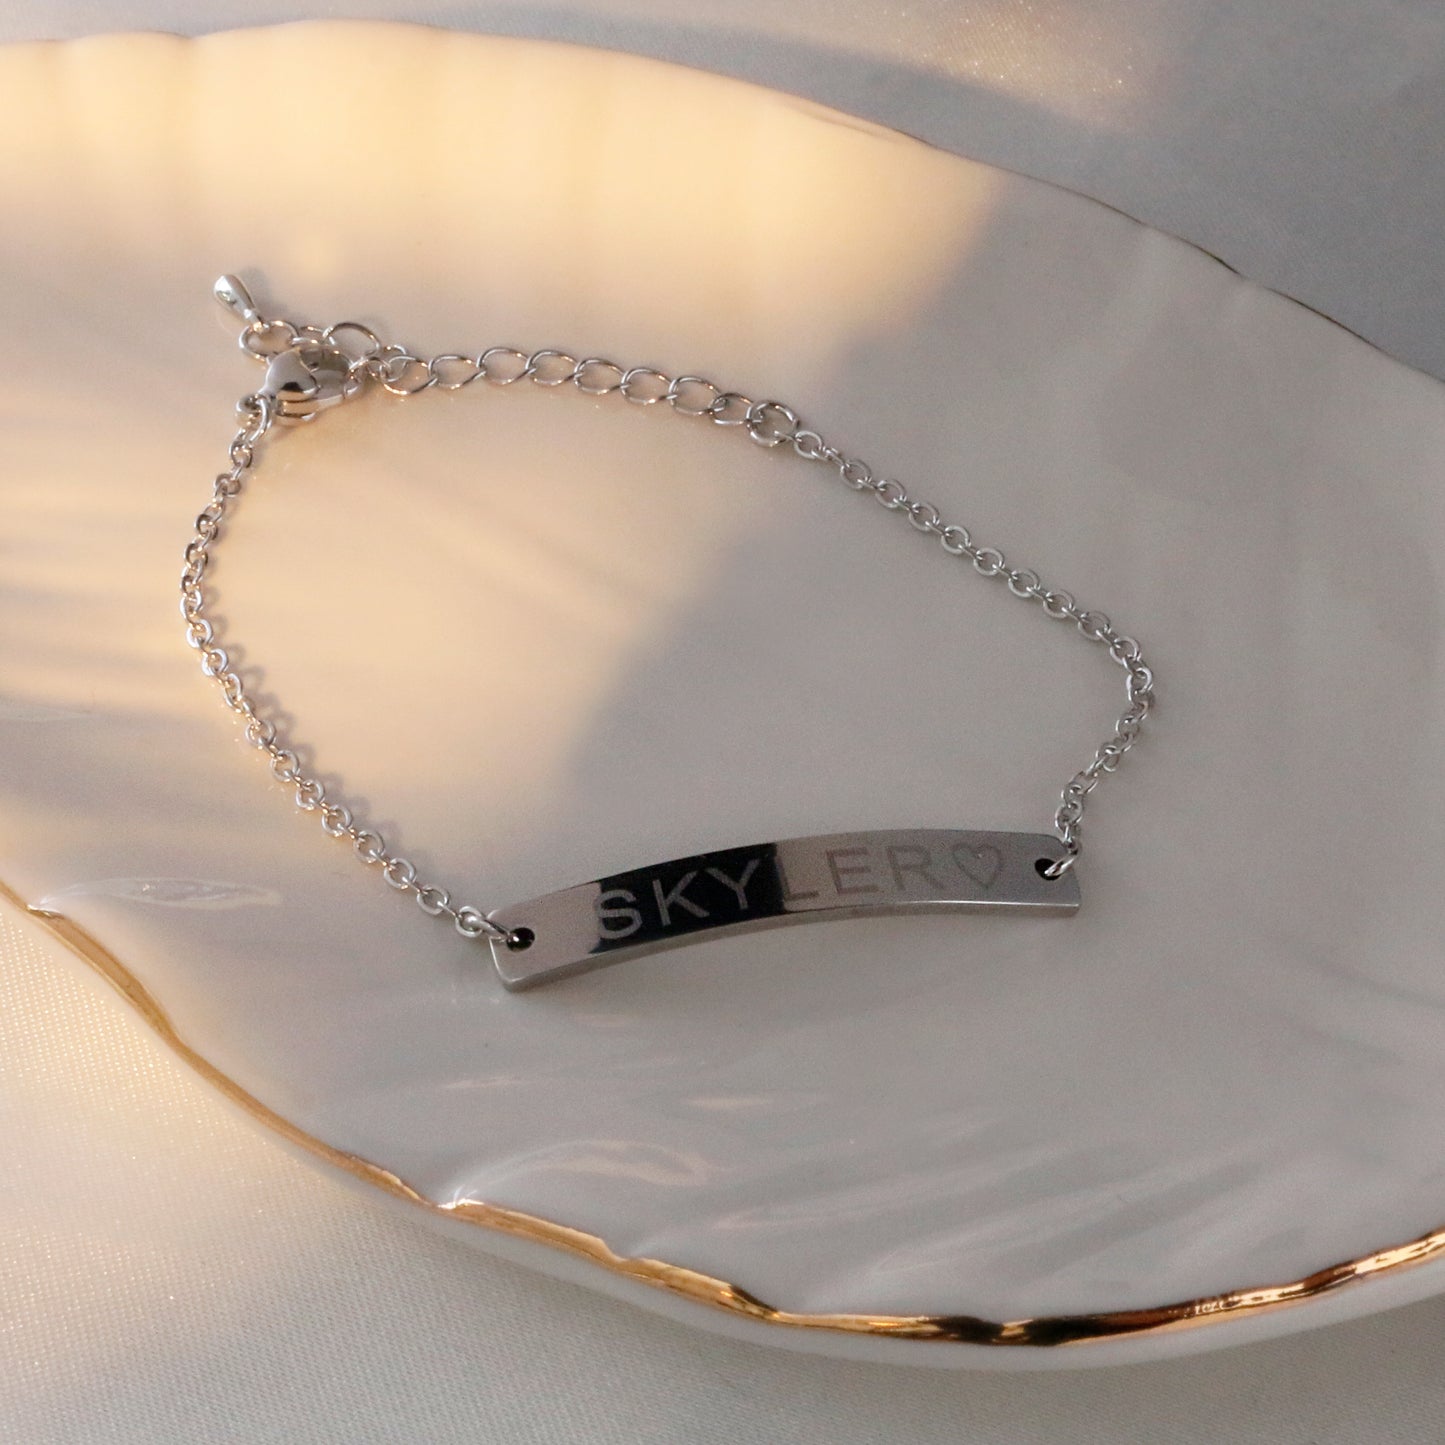 Personalized Nameplate Bracelet - Minimalist simple jewelry